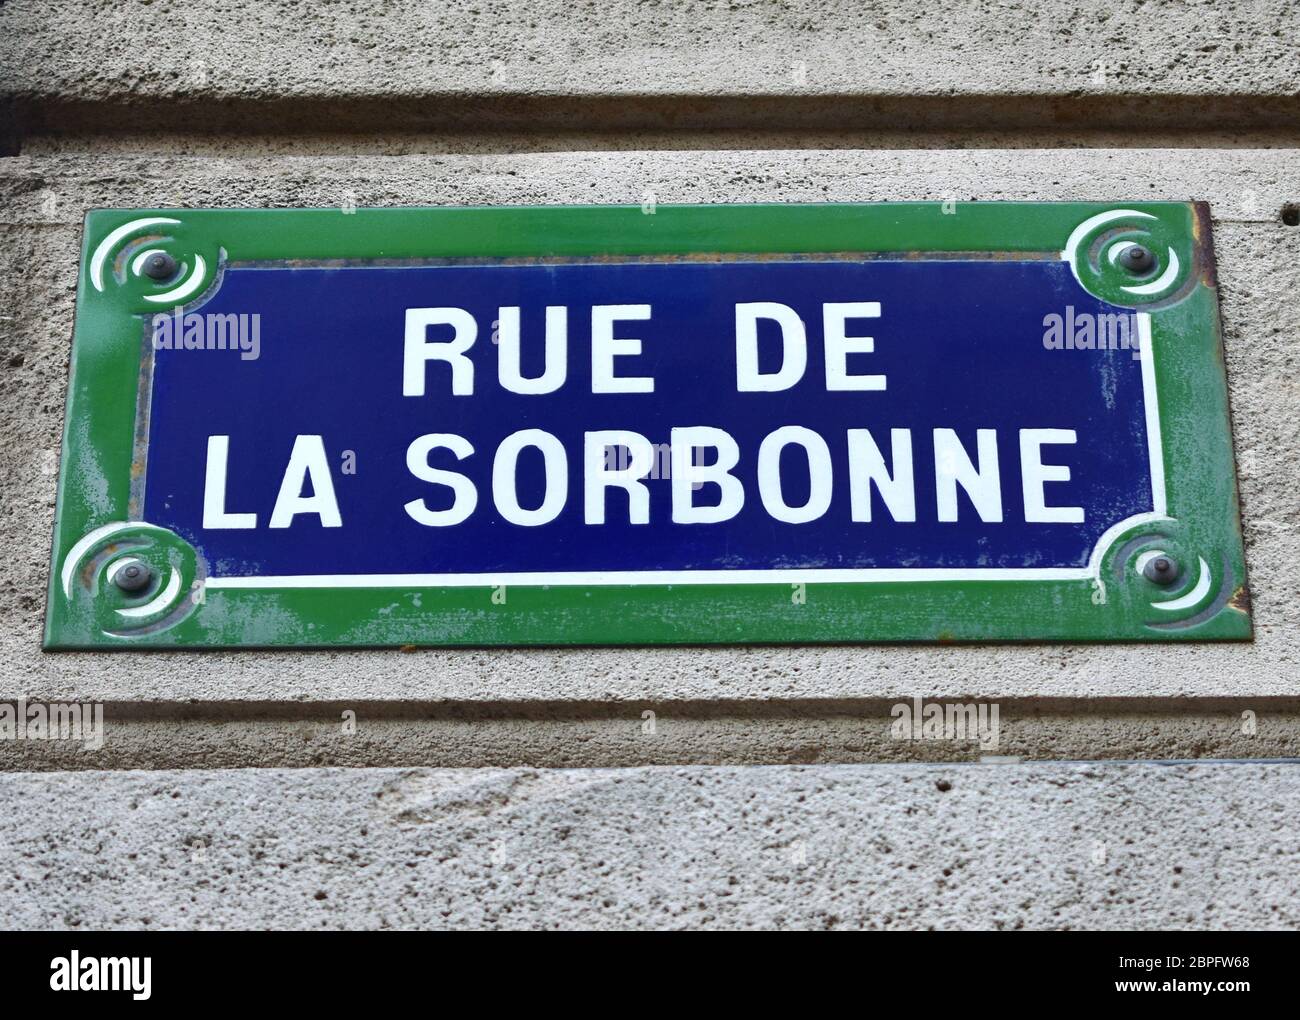 Rue de la Sorbonne street sign close-up. Paris, France. Stock Photo